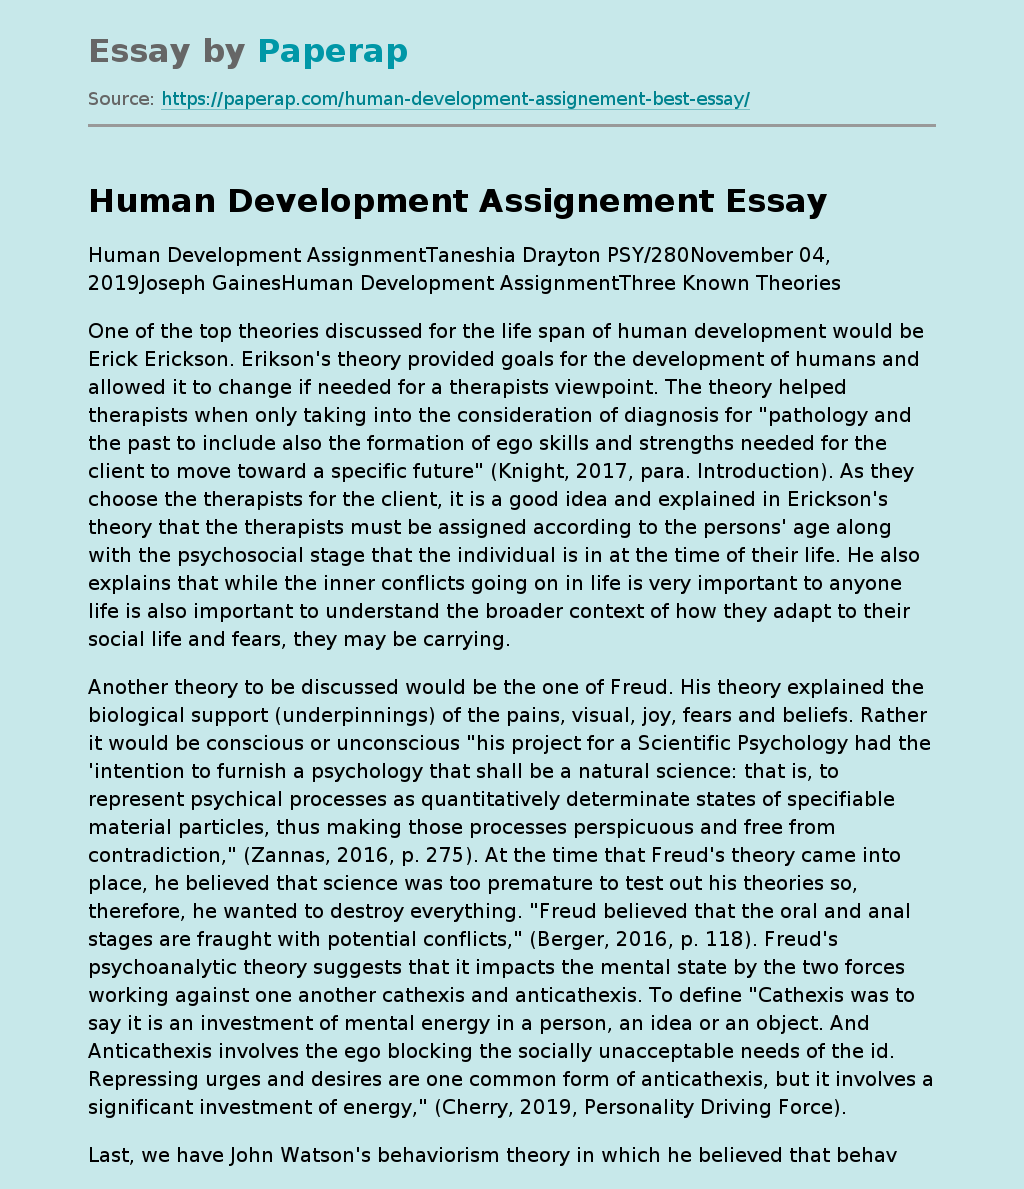 Human Development Assignement